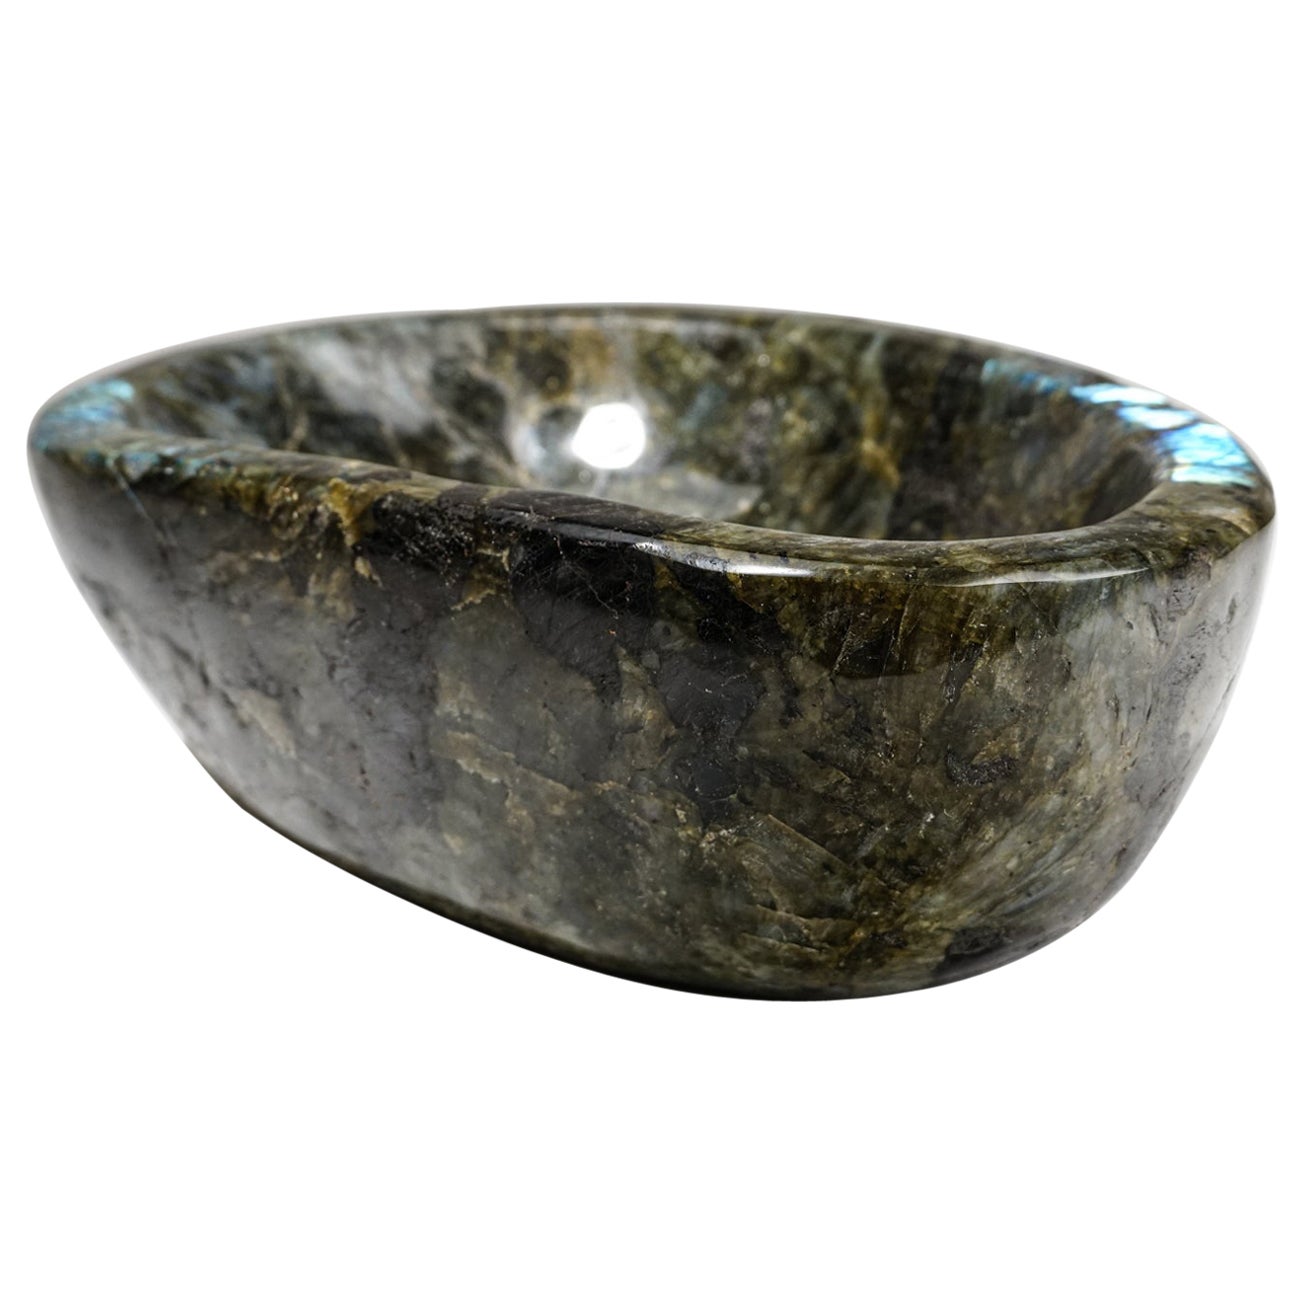 Genuine Polished Labradorite Large Bowl (19.6 lbs)